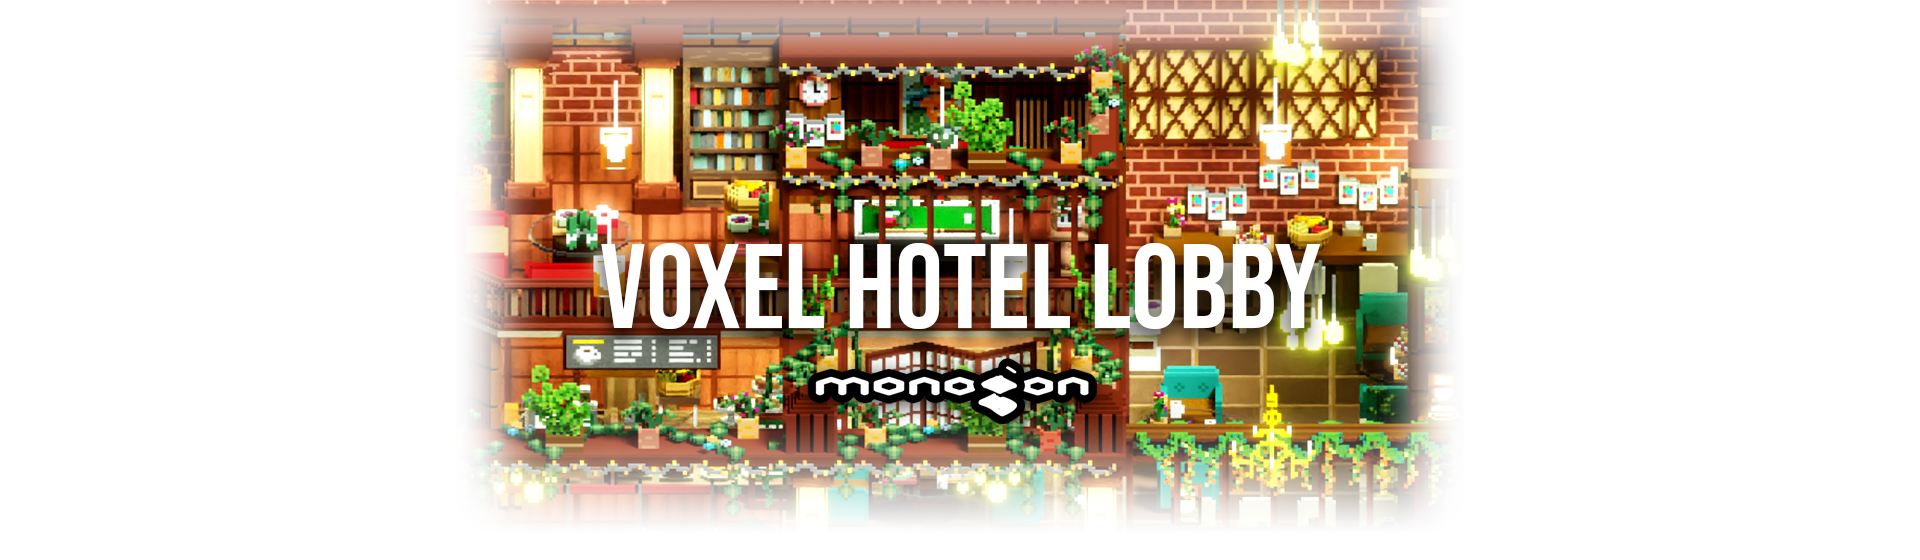 Voxel Hotel Lobby - monogon